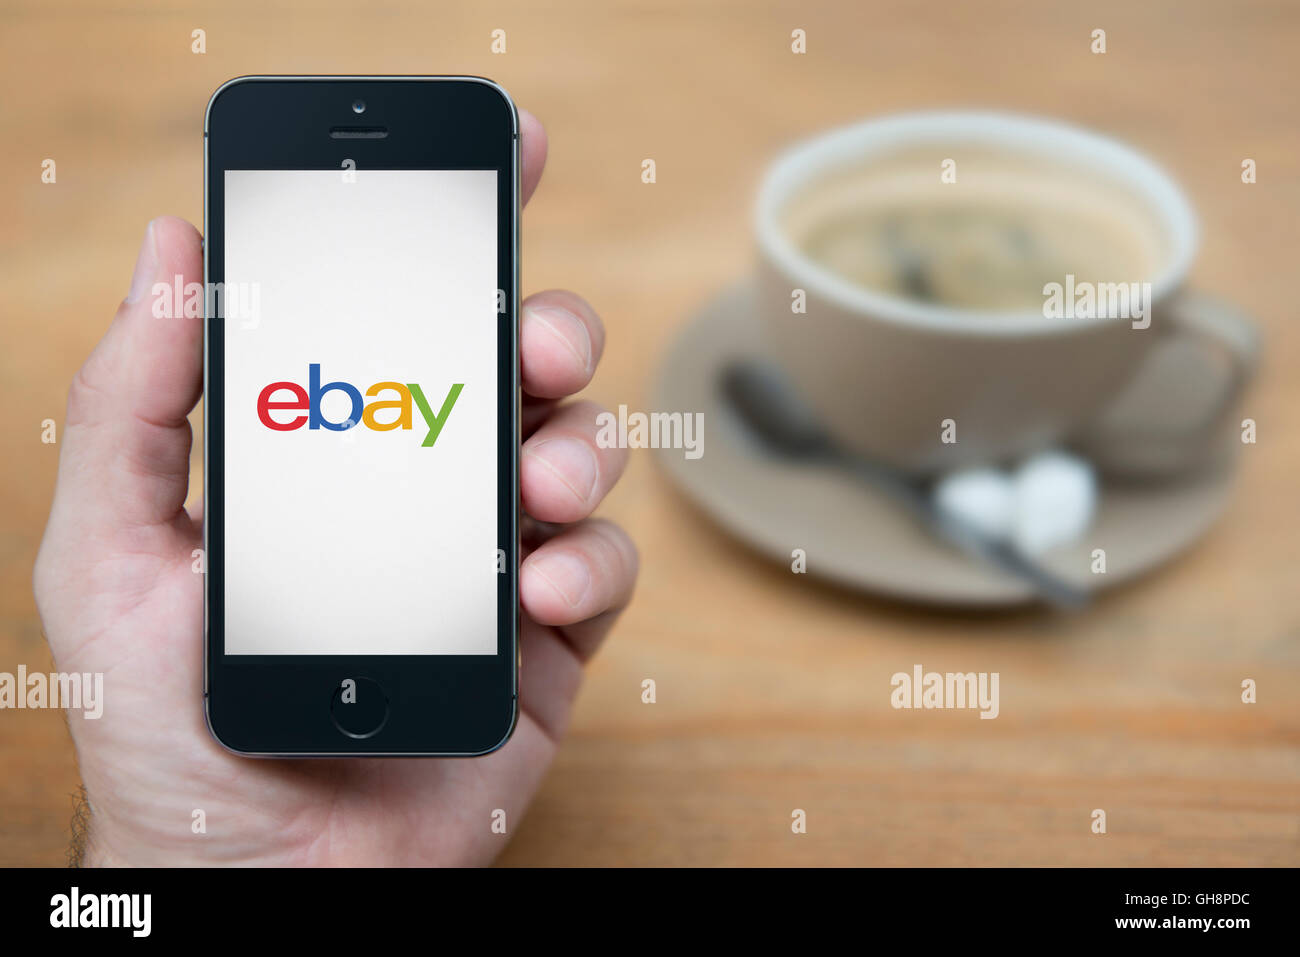 Un homme se penche sur son iPhone qui affiche le logo Ebay, en restant assis avec une tasse de café (usage éditorial uniquement). Banque D'Images